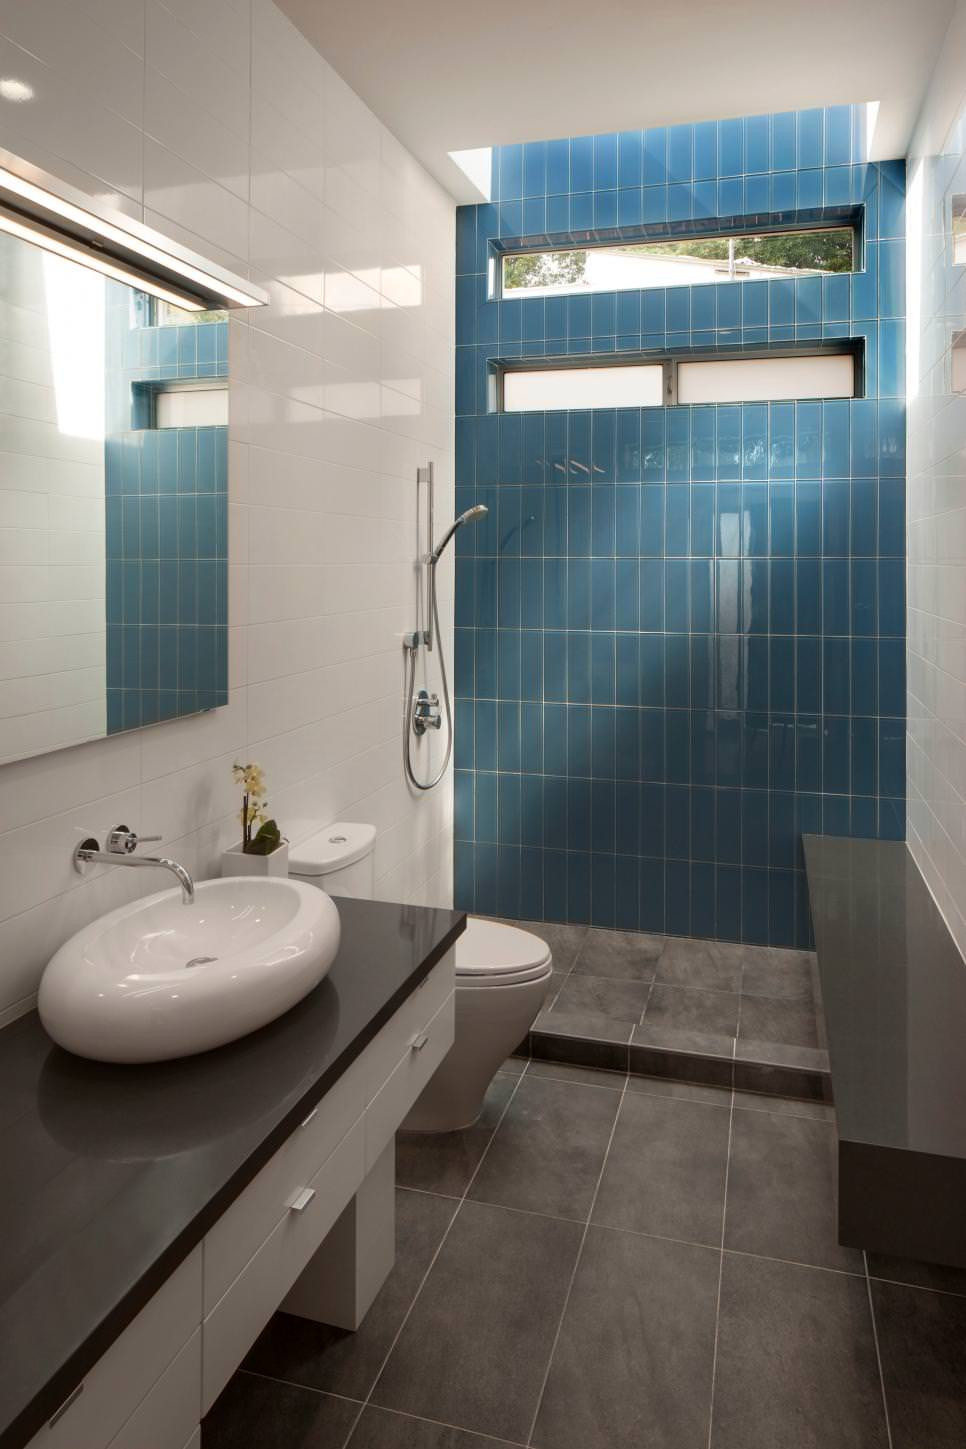 Tile A Bathroom Wall
 25 Bathroom Backsplash Designs Decorating Ideas